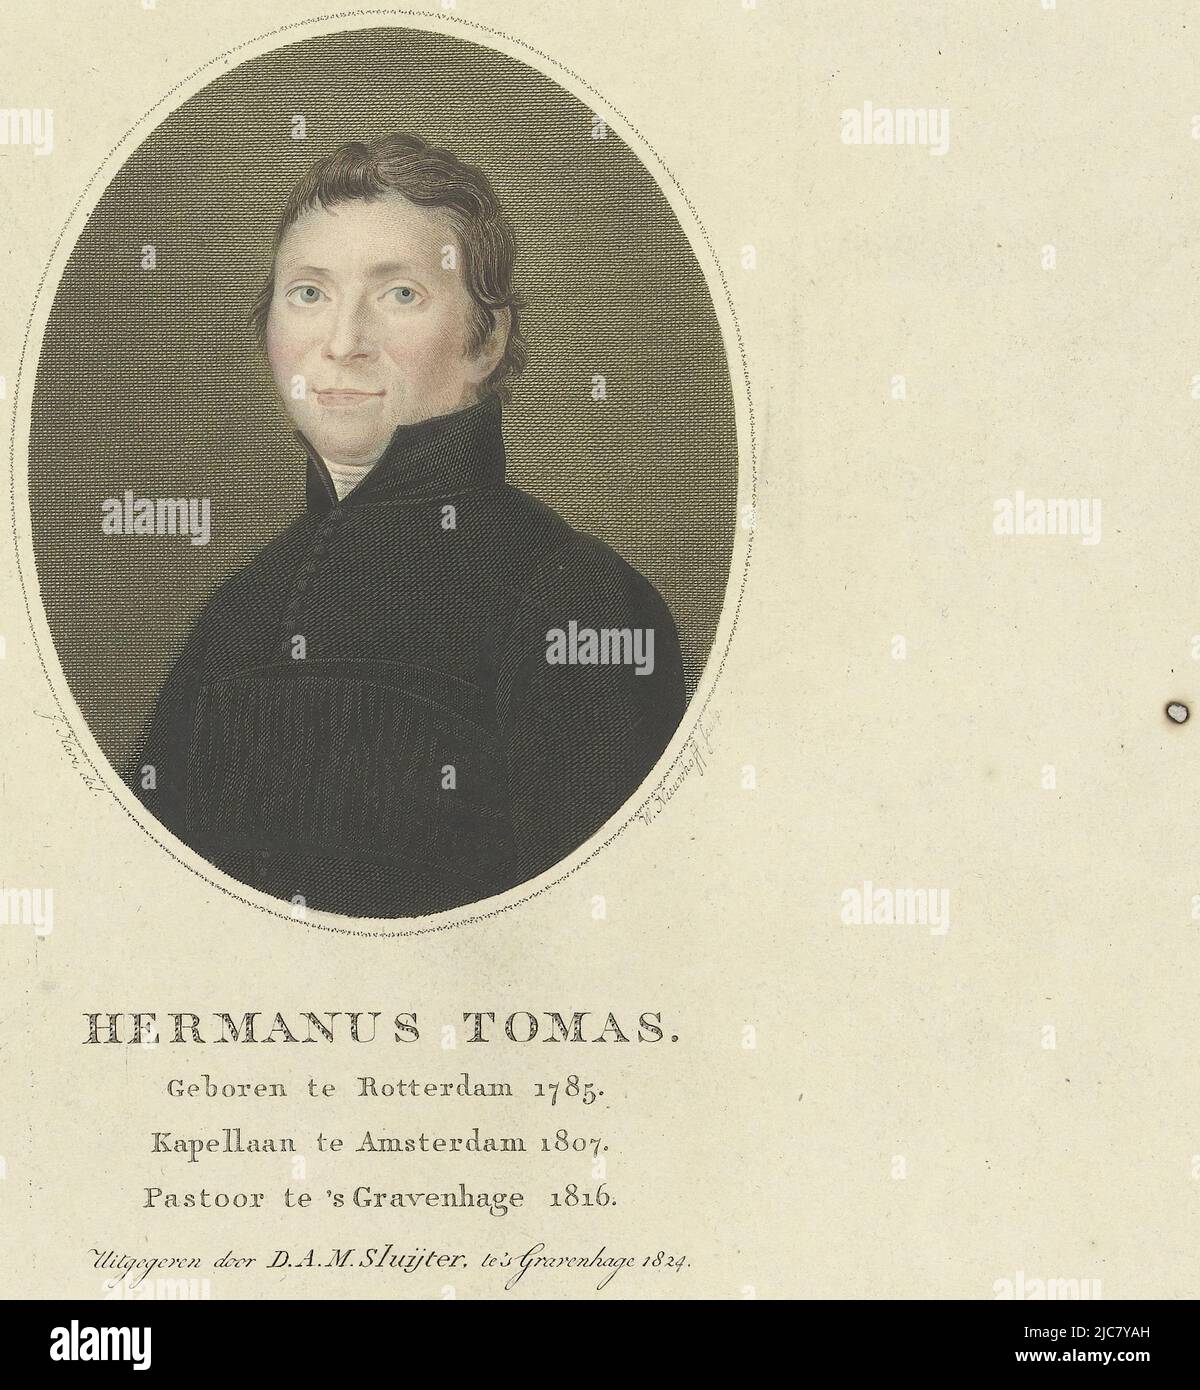 Portrait d'Hermanus Tomas, curé de la paroisse de la Haye. Buste à gauche dans un ovale, Portrait de Hermanus Tomas Hermanus Tomas , imprimerie: Walraad Nieuwhoff, (mentionné sur l'objet), dessinateur intermédiaire: Johannes Hari (I), (mentionné sur l'objet), éditeur: D.A.M. Sluyter, (mentionné sur l'objet), la Haye, 1824, papier, gravure, gravure, h 256 mm - l 204 mm Banque D'Images